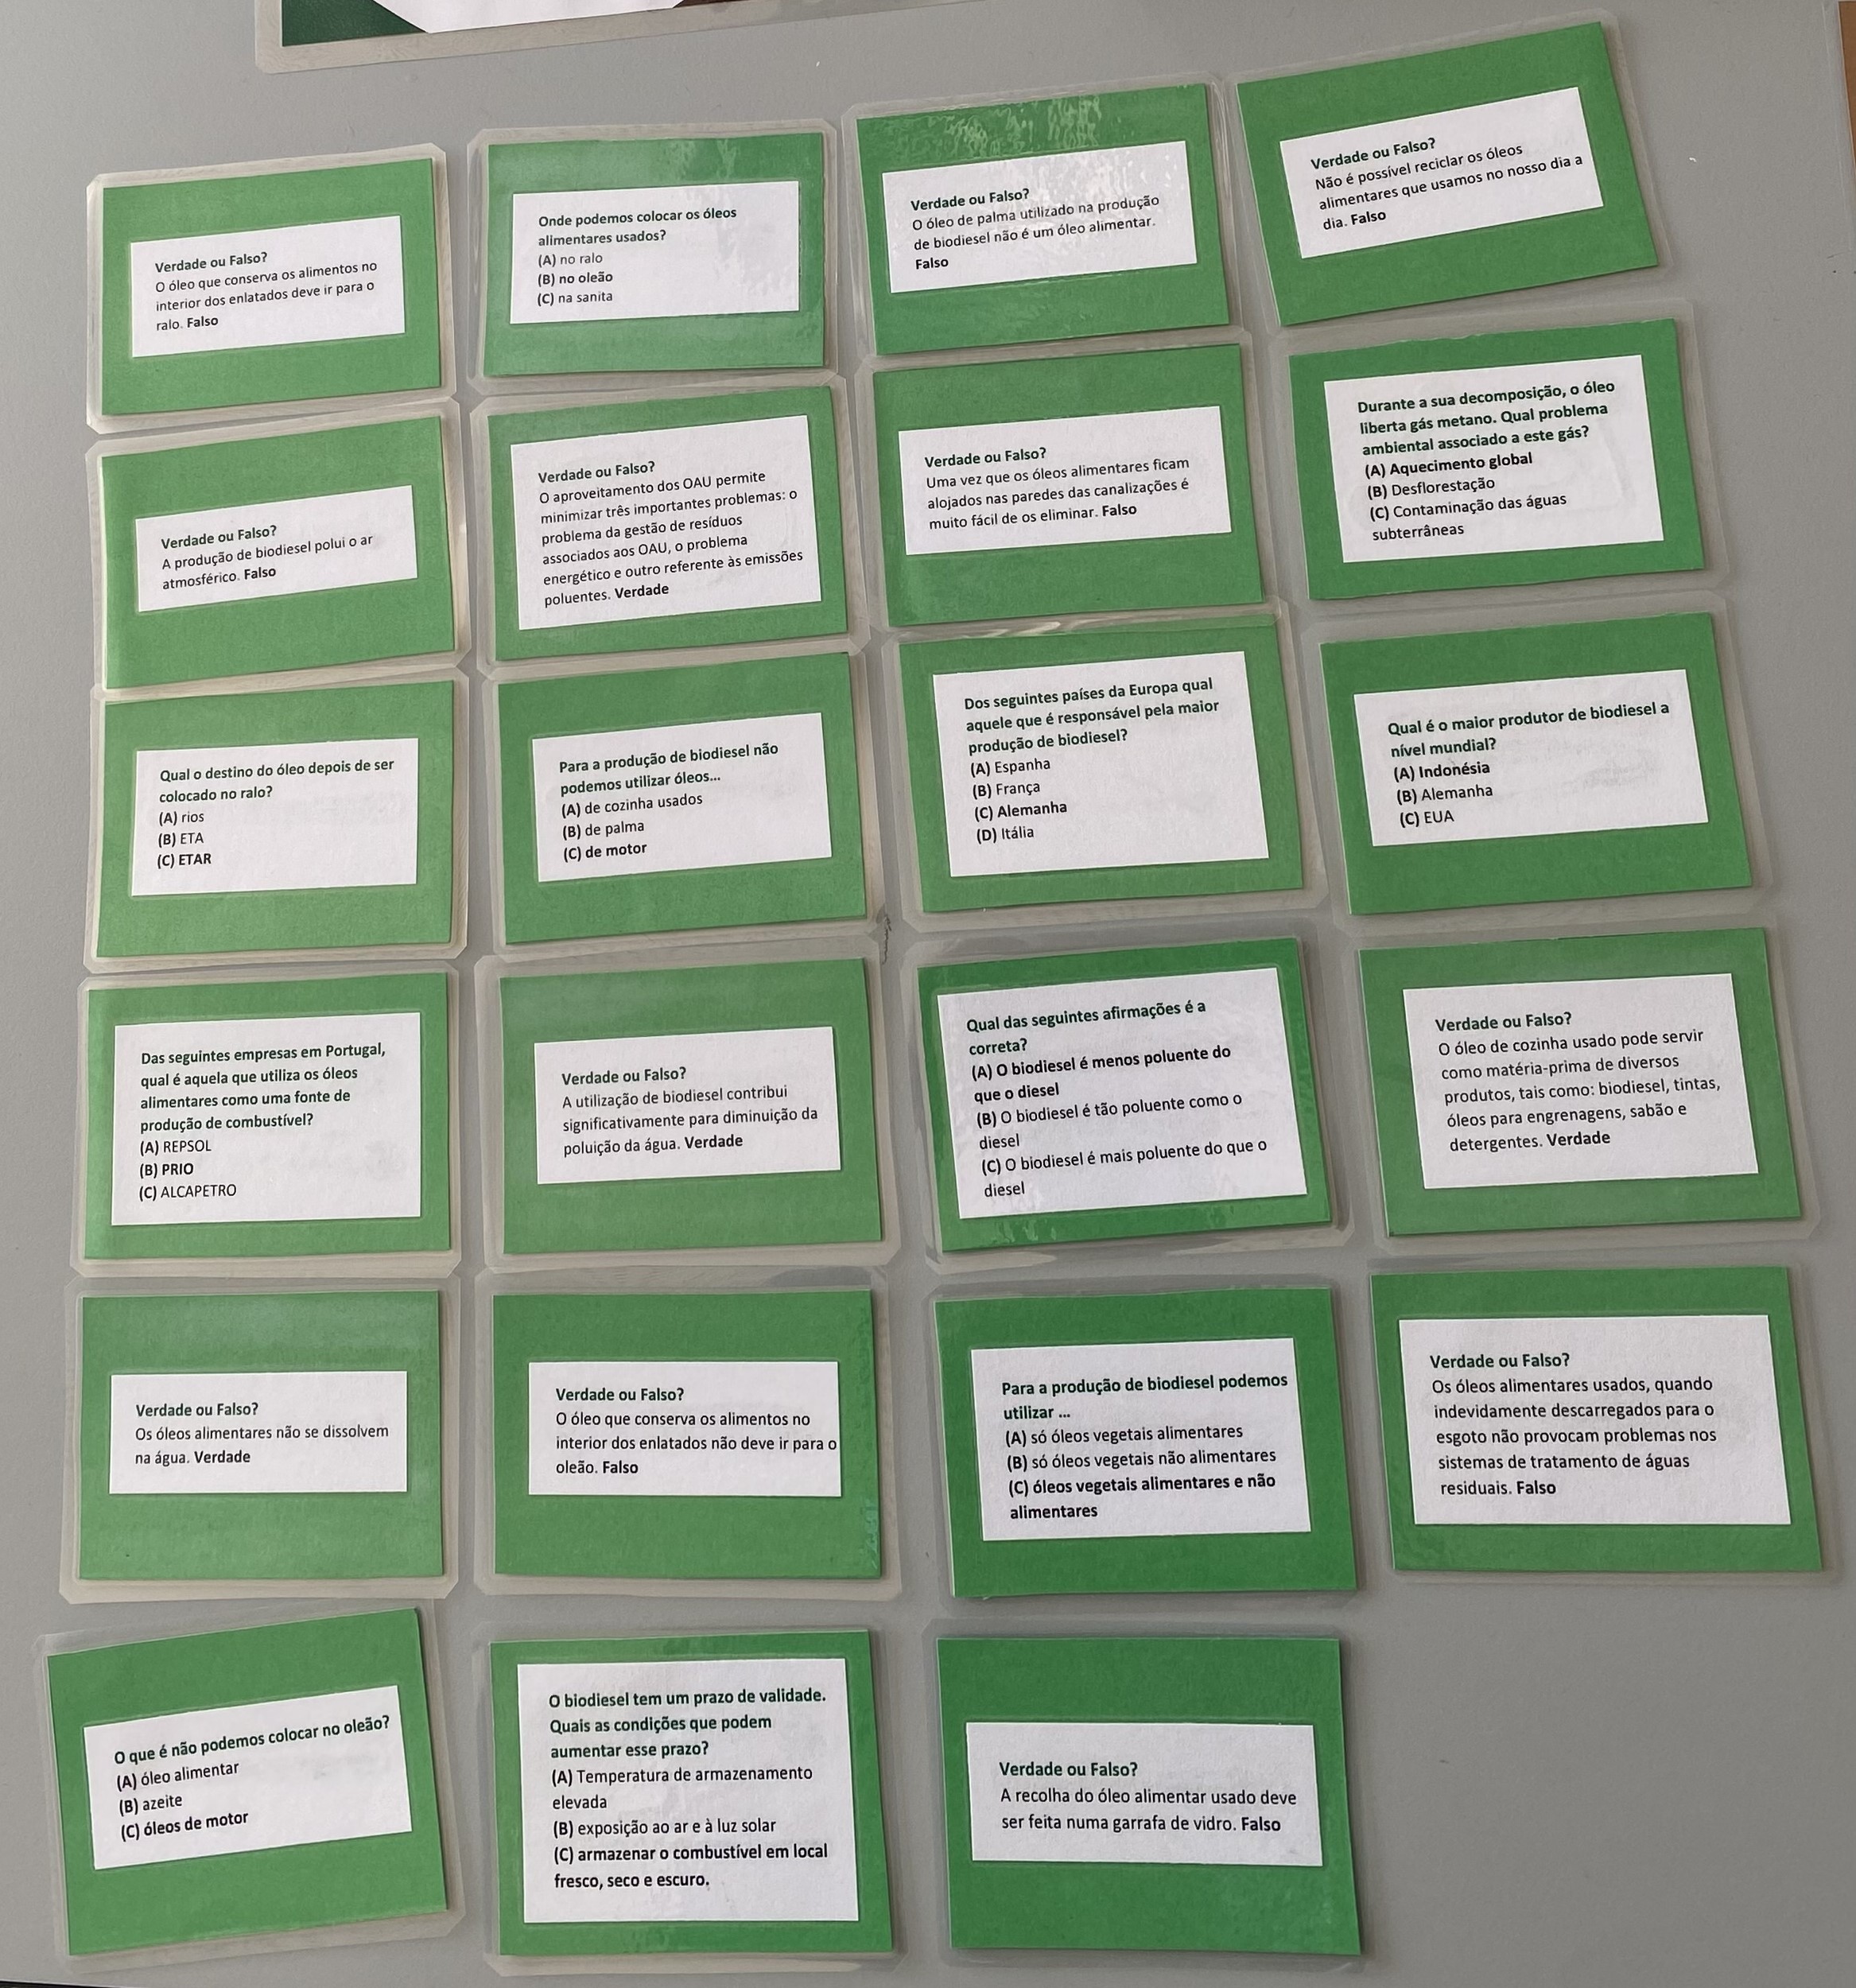 Cartas verdes - perguntas<br />
(As perguntas das casas verdes são mais fáceis do que as das cartas castanhas)